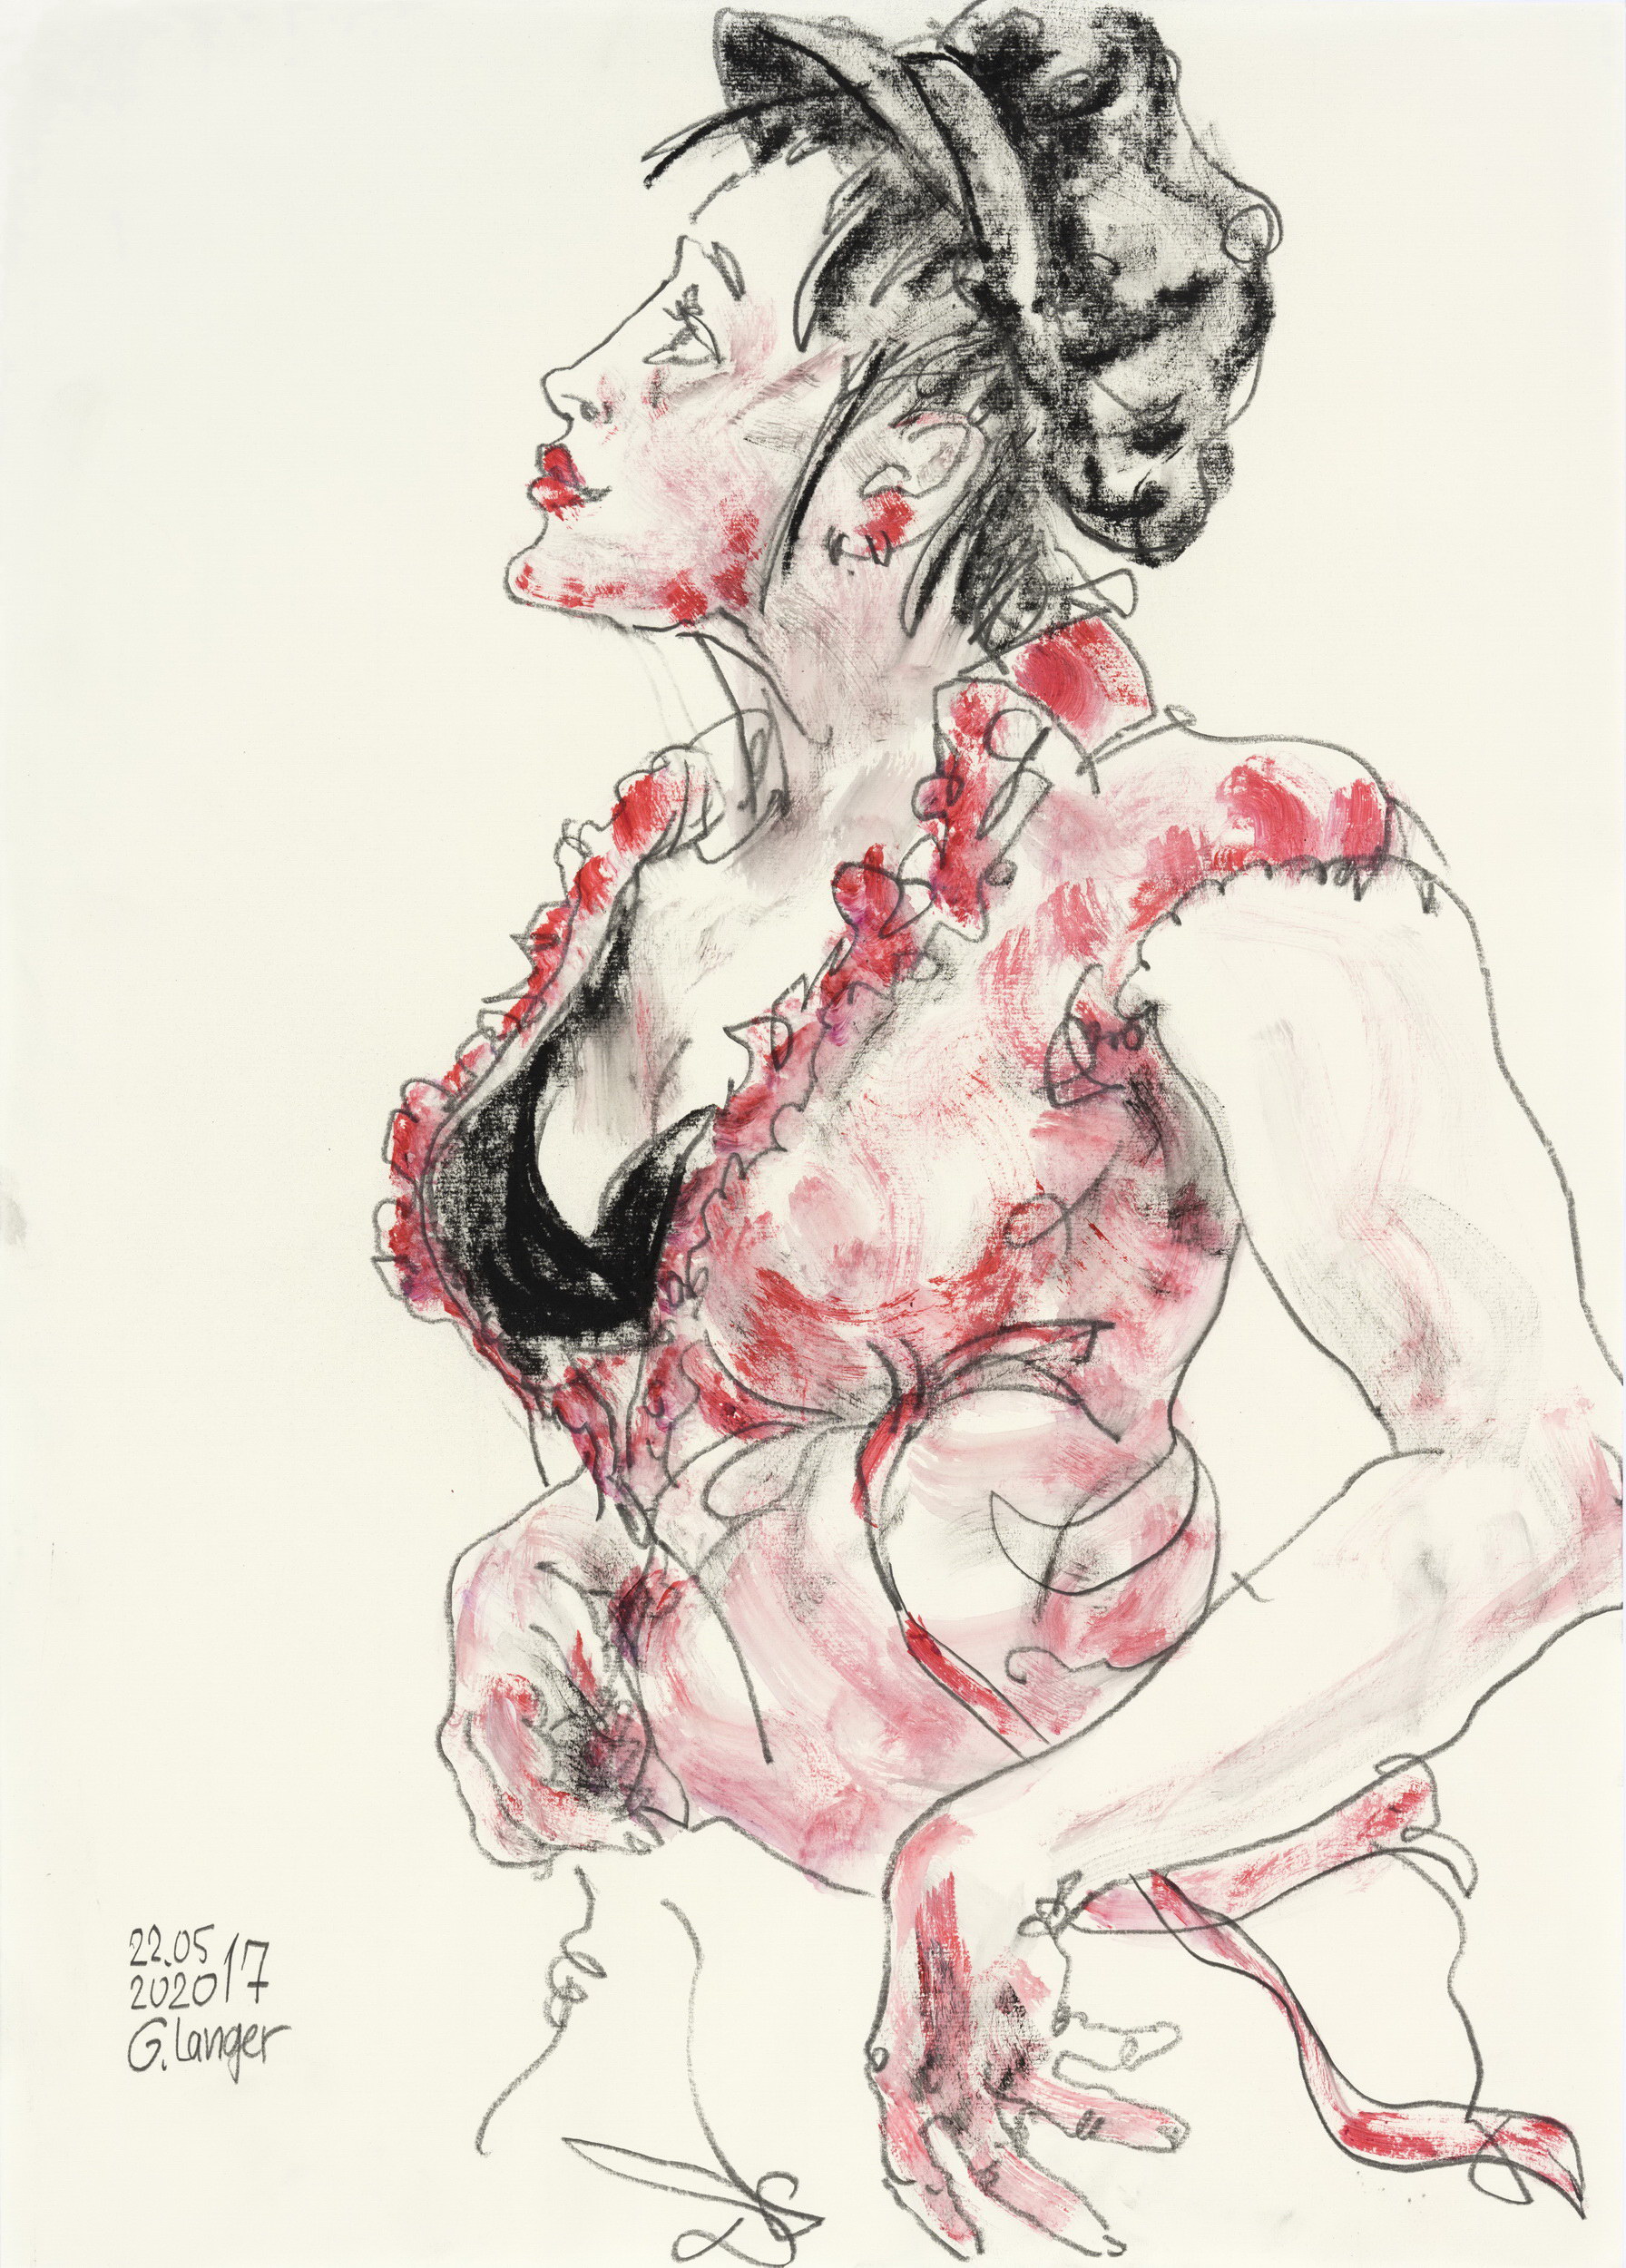 Gunter Langer, Junge Frau mit roter Bluse und schwarzer Mütze, 2020, Acryl Wasserfarbe Bleistift, Zeichenpapier, 70 x 50 cm